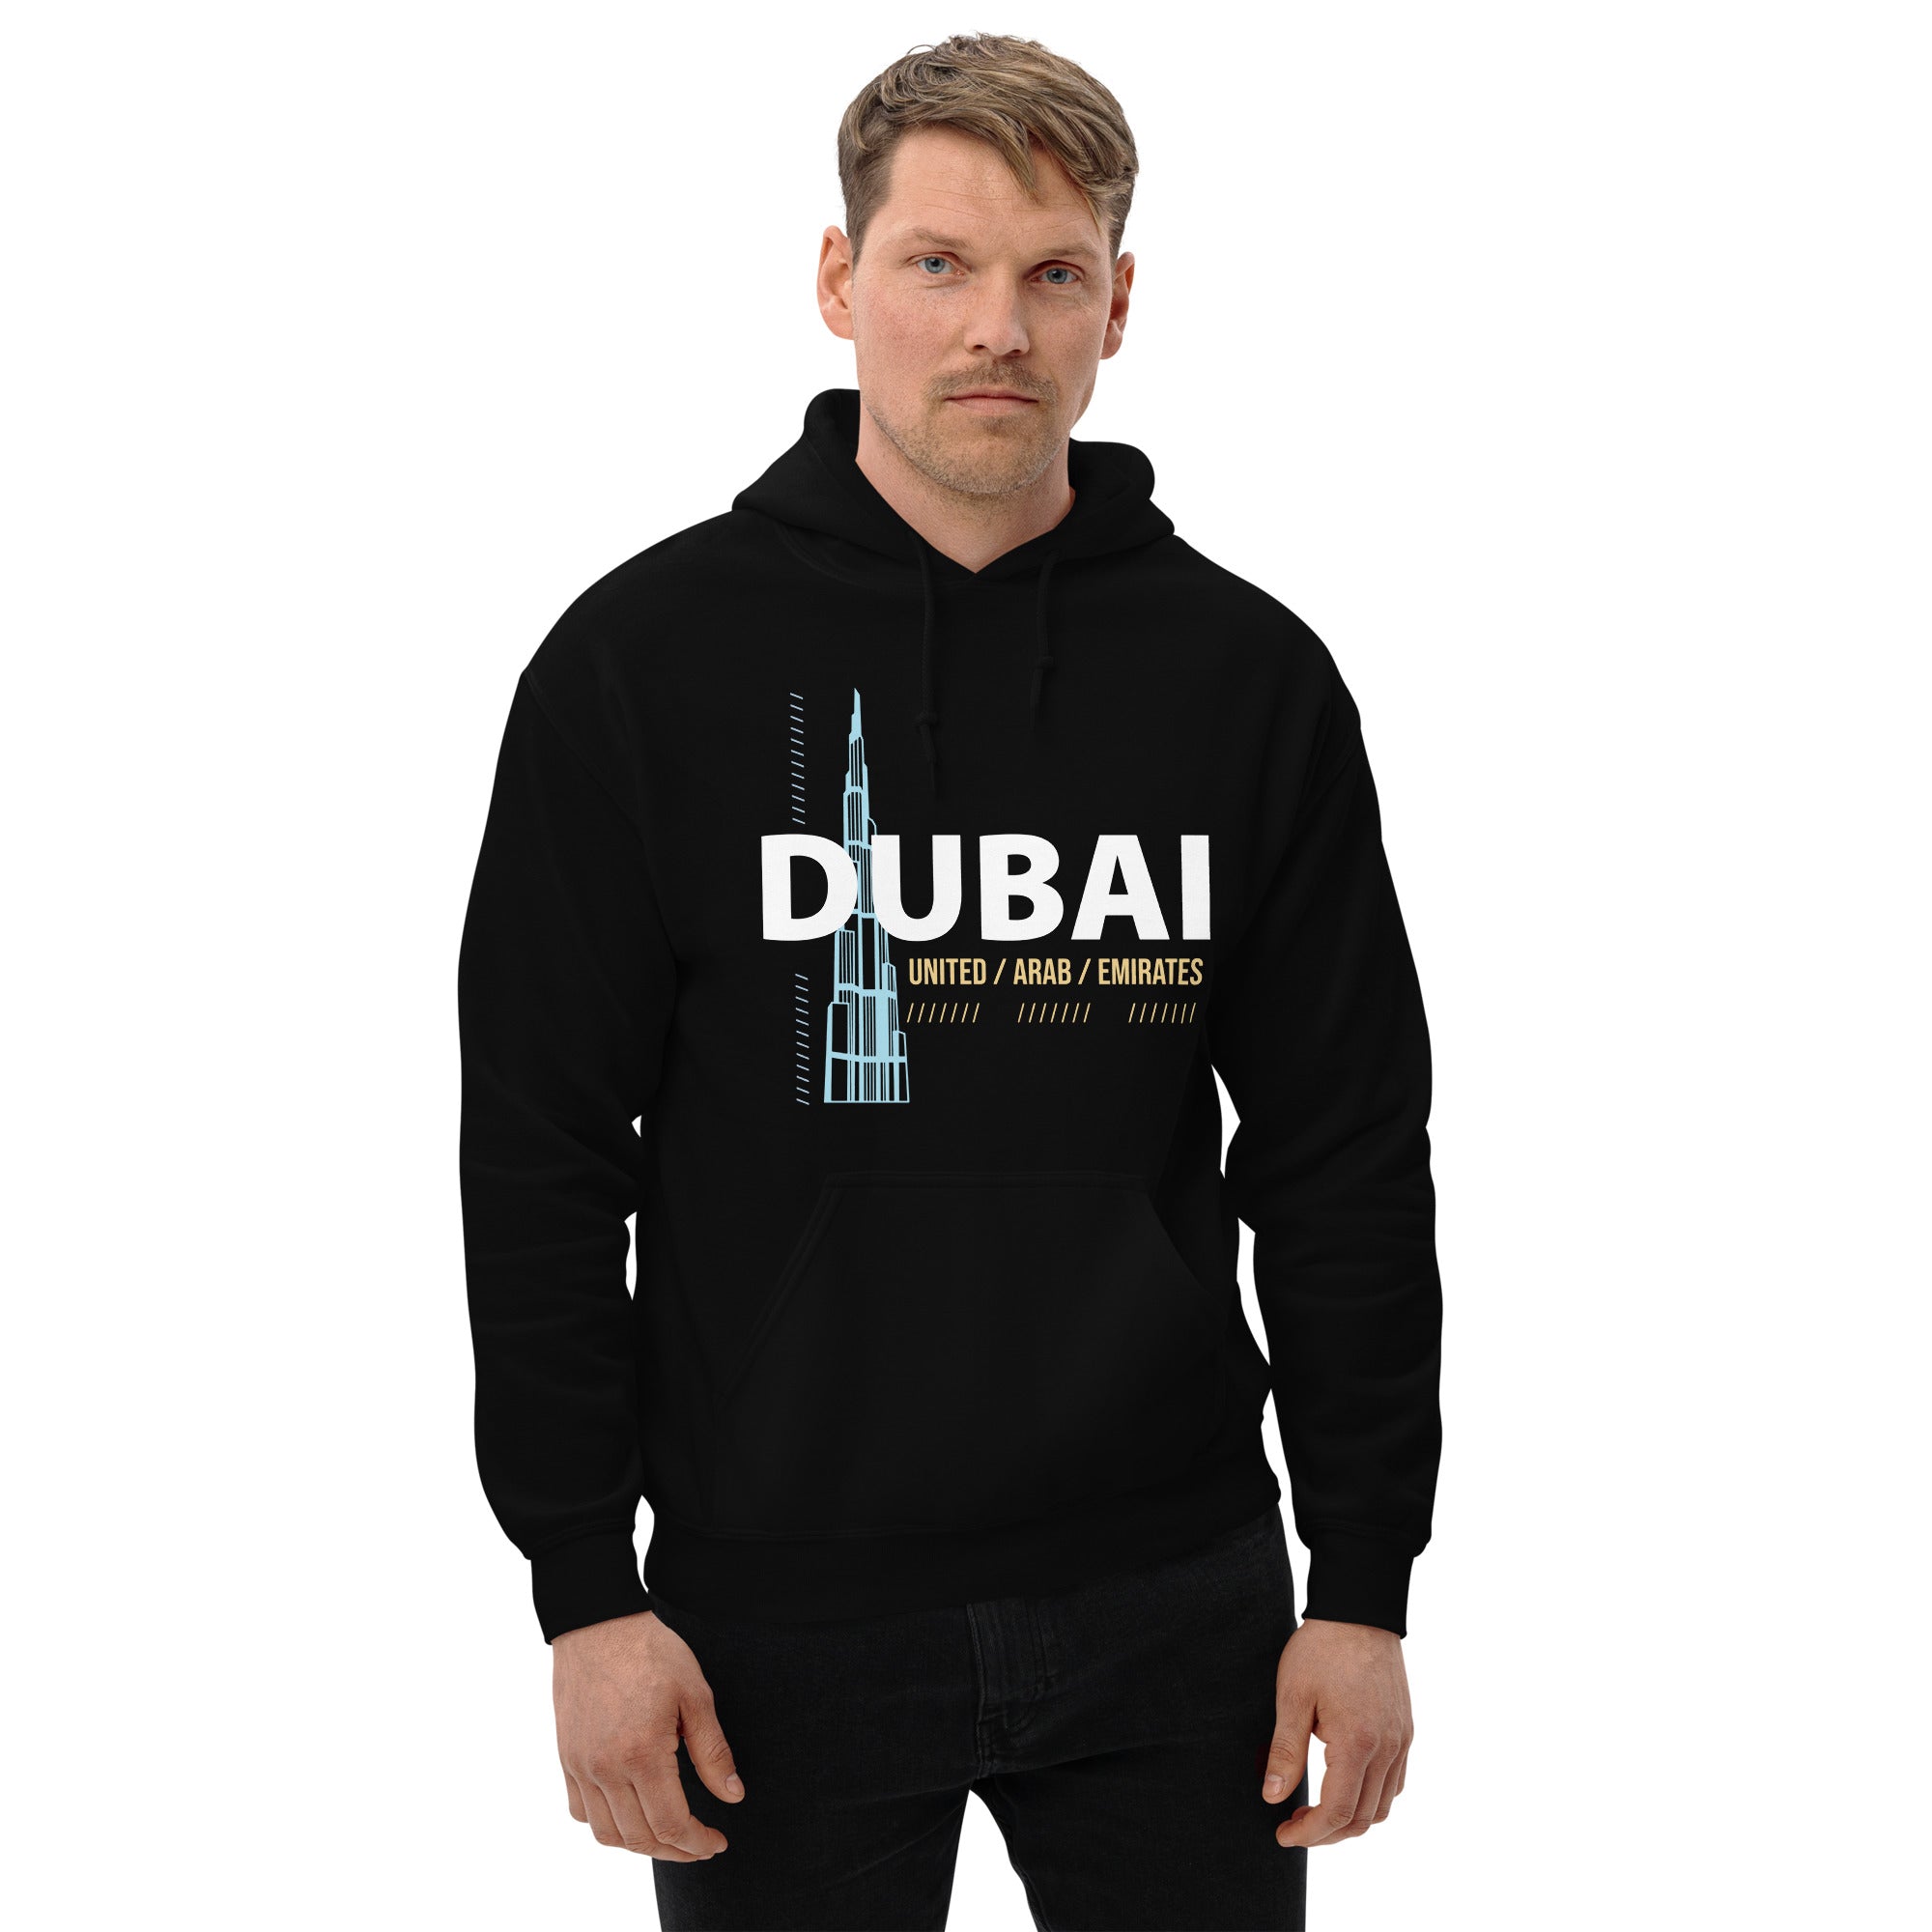 Dubai - Unisex Hoodie